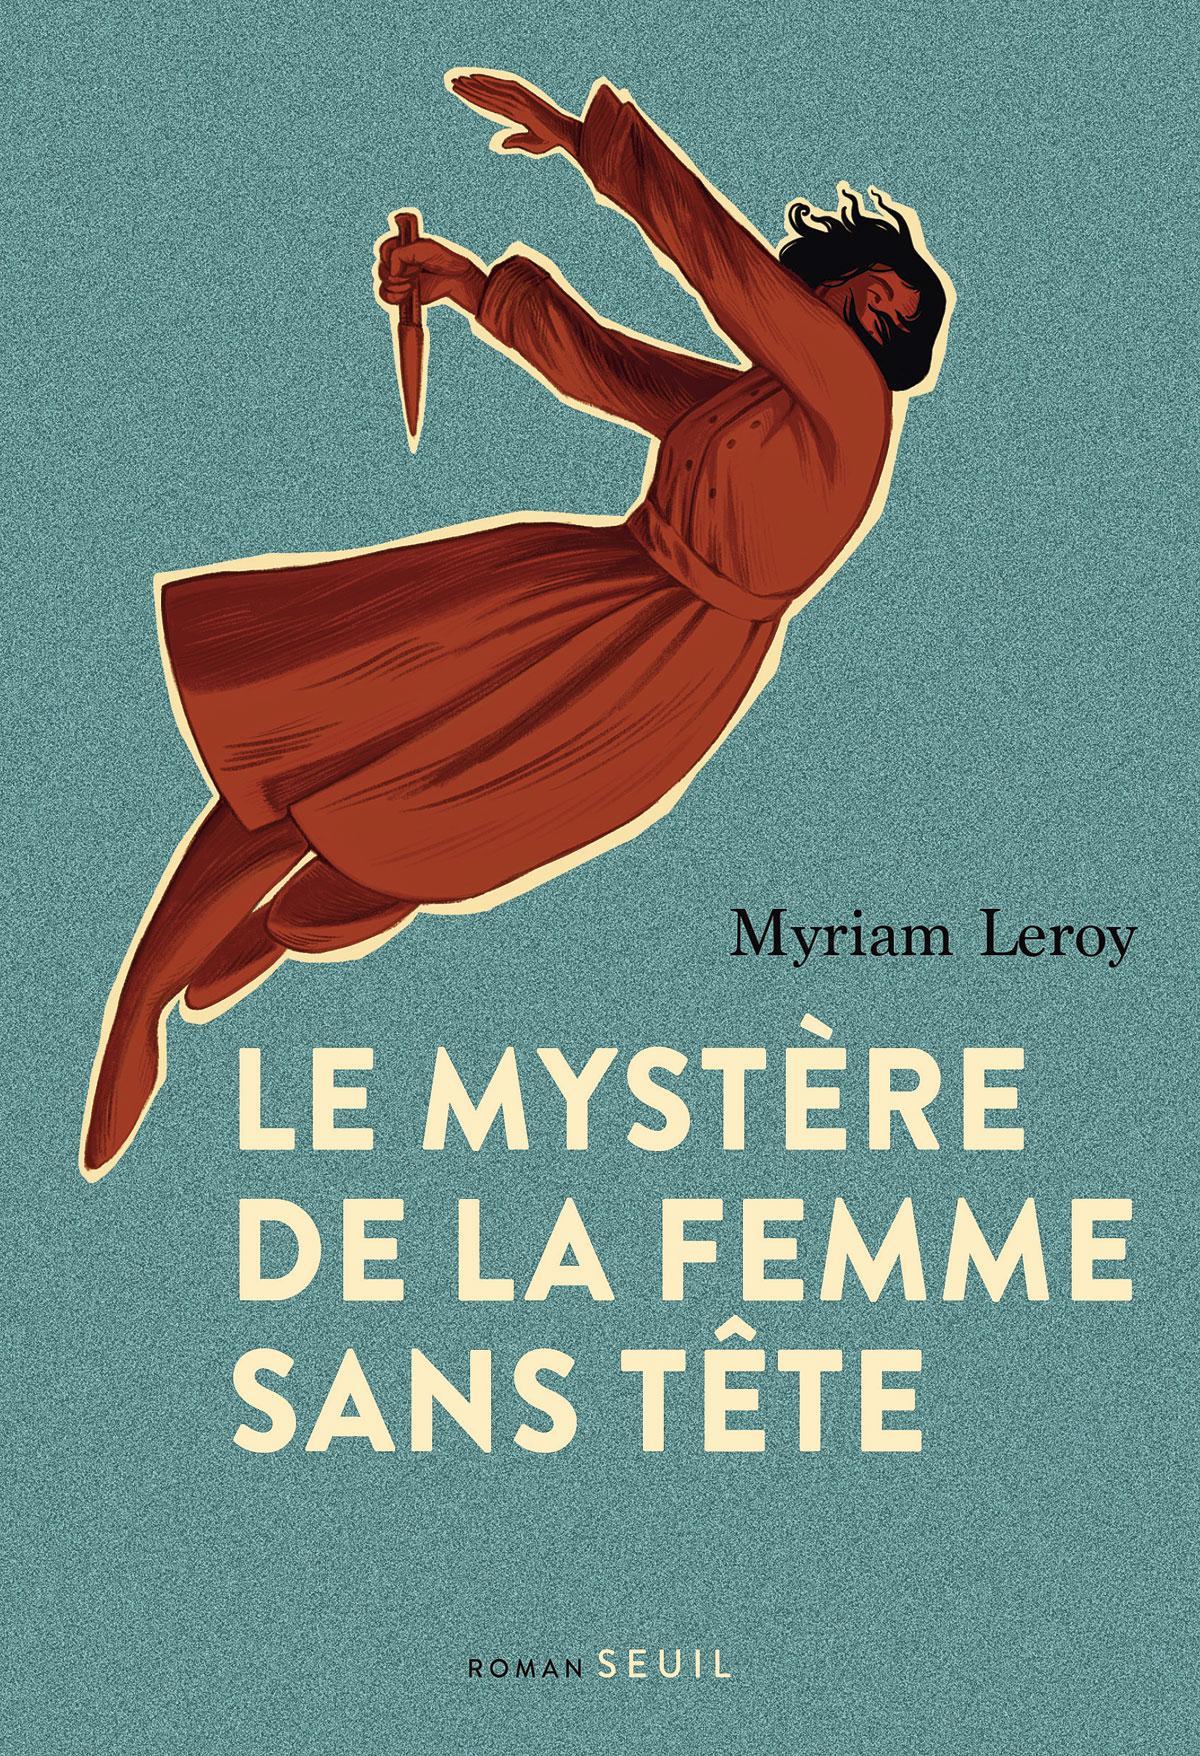 (1) Le Mystère de la femme sans tête, par Myriam Leroy, Seuil, 288 p.